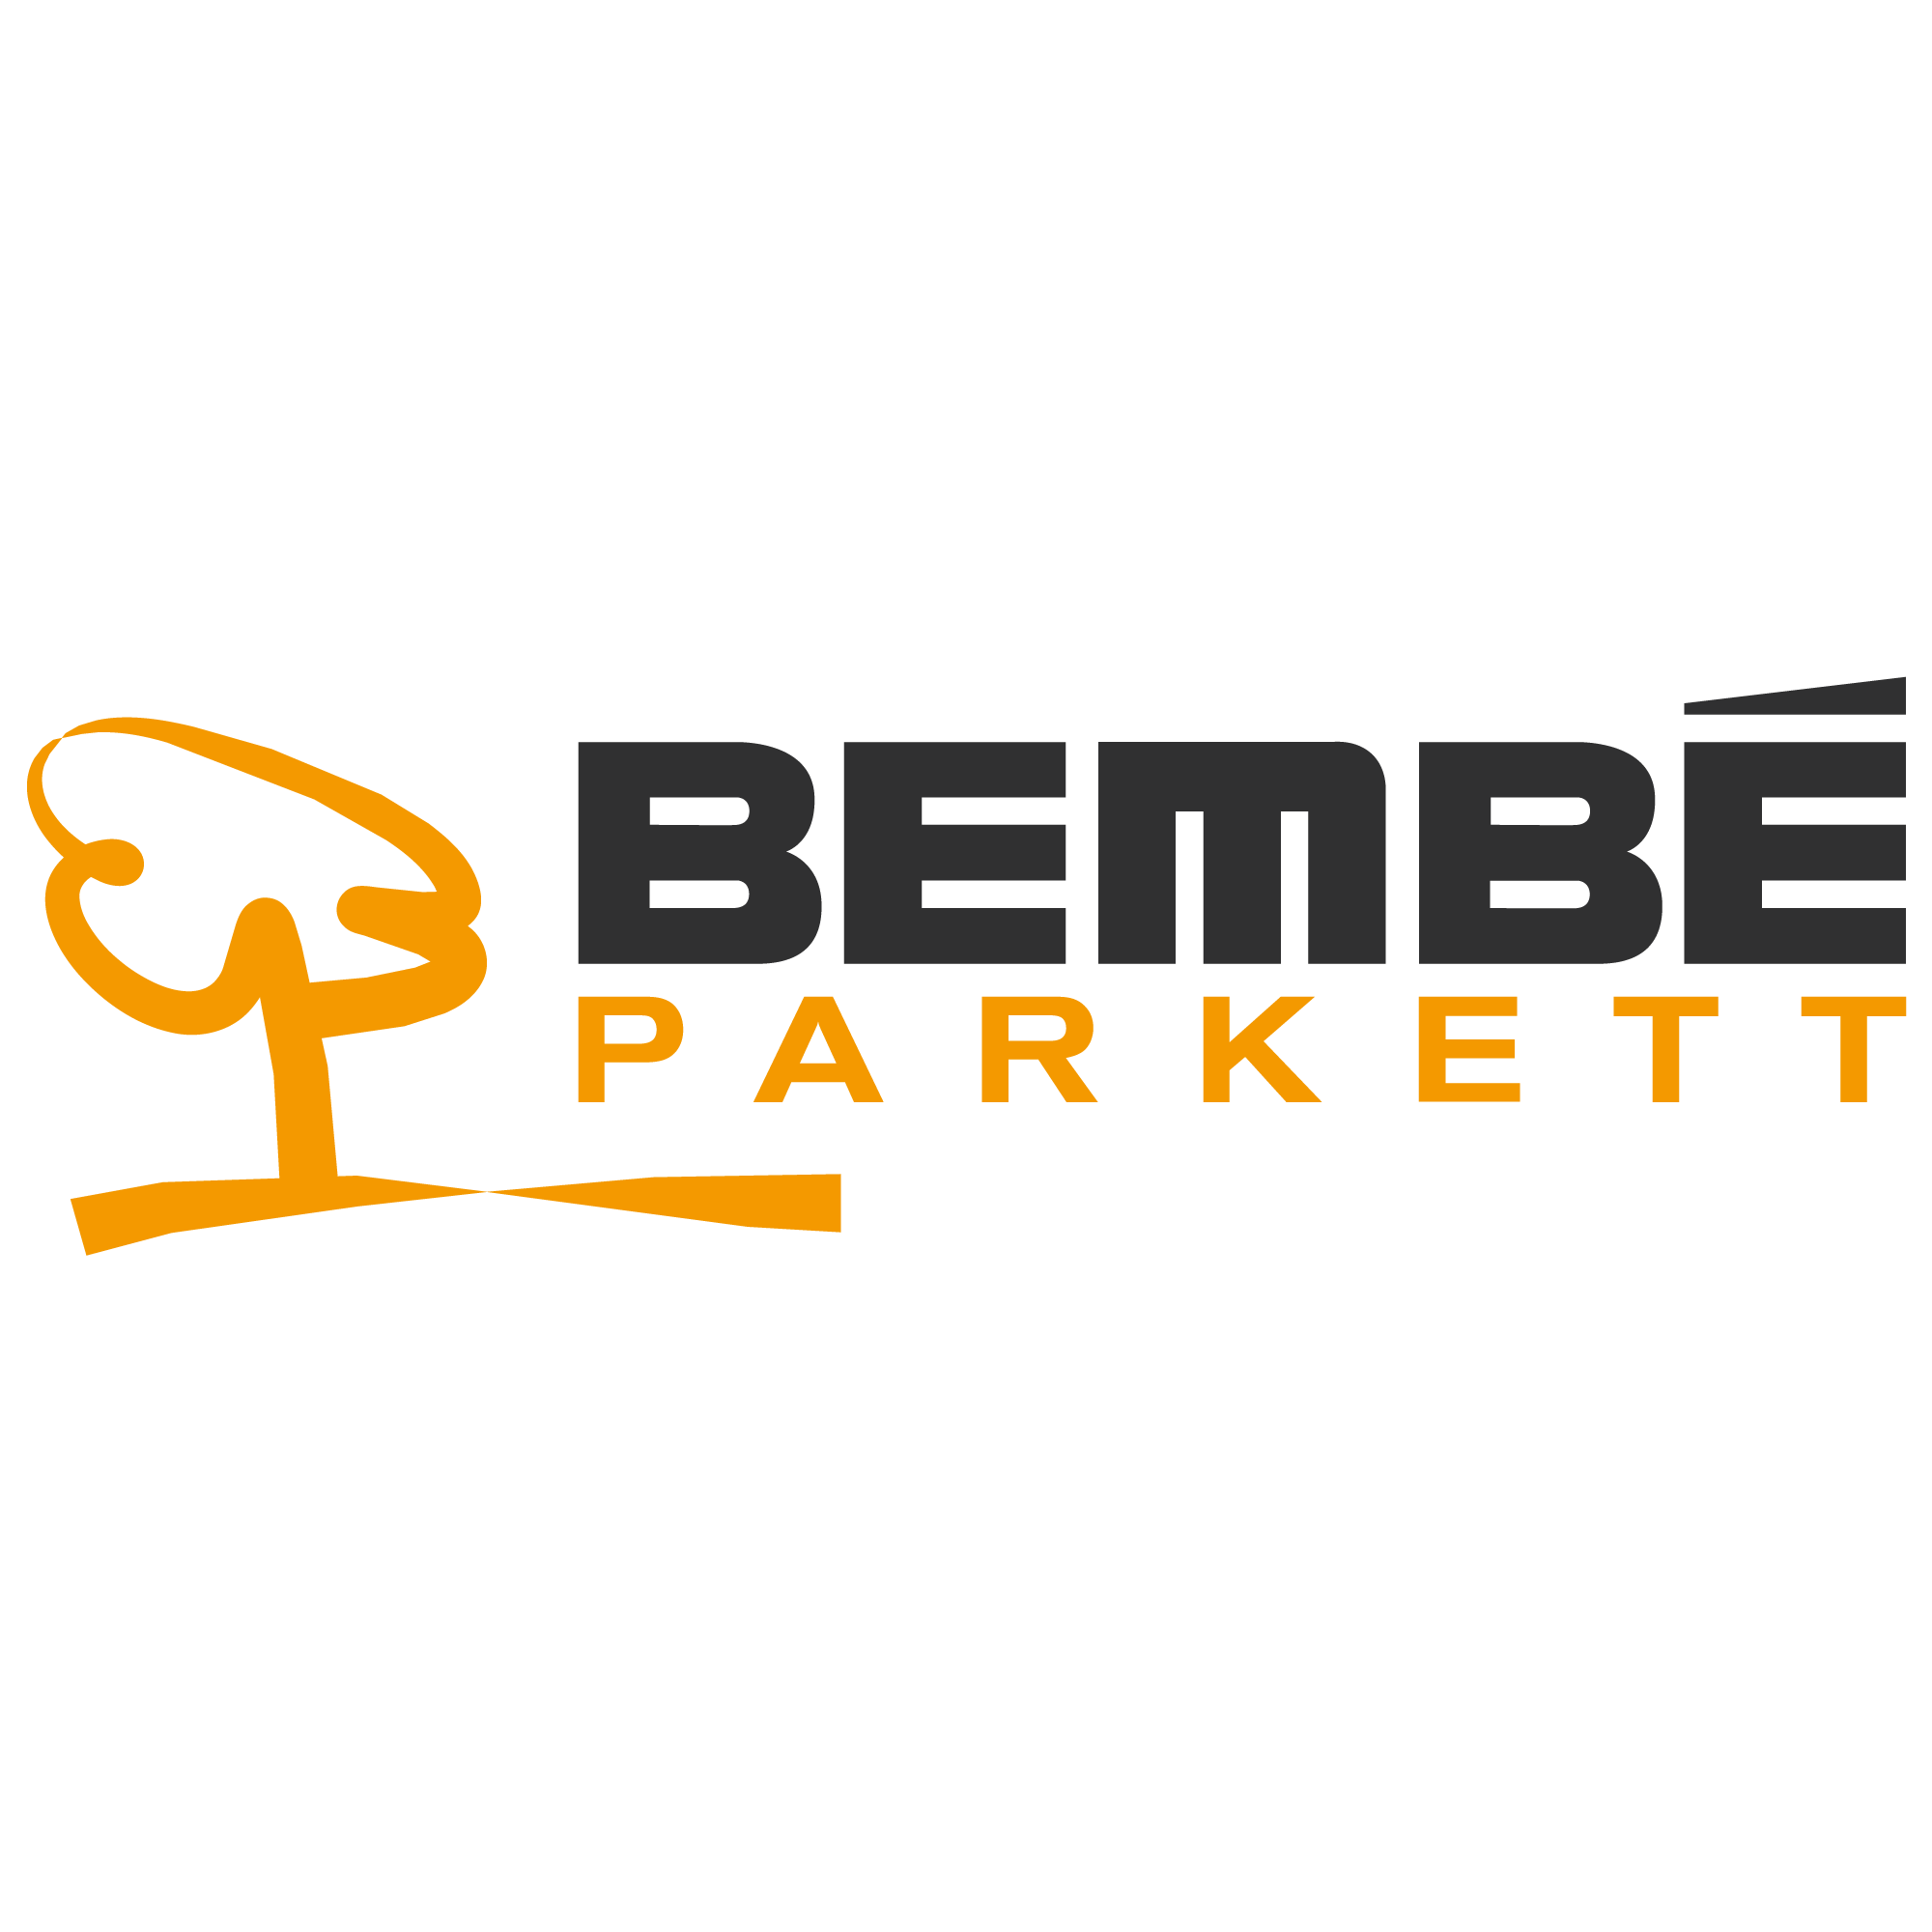 Logo Bembé Parkett